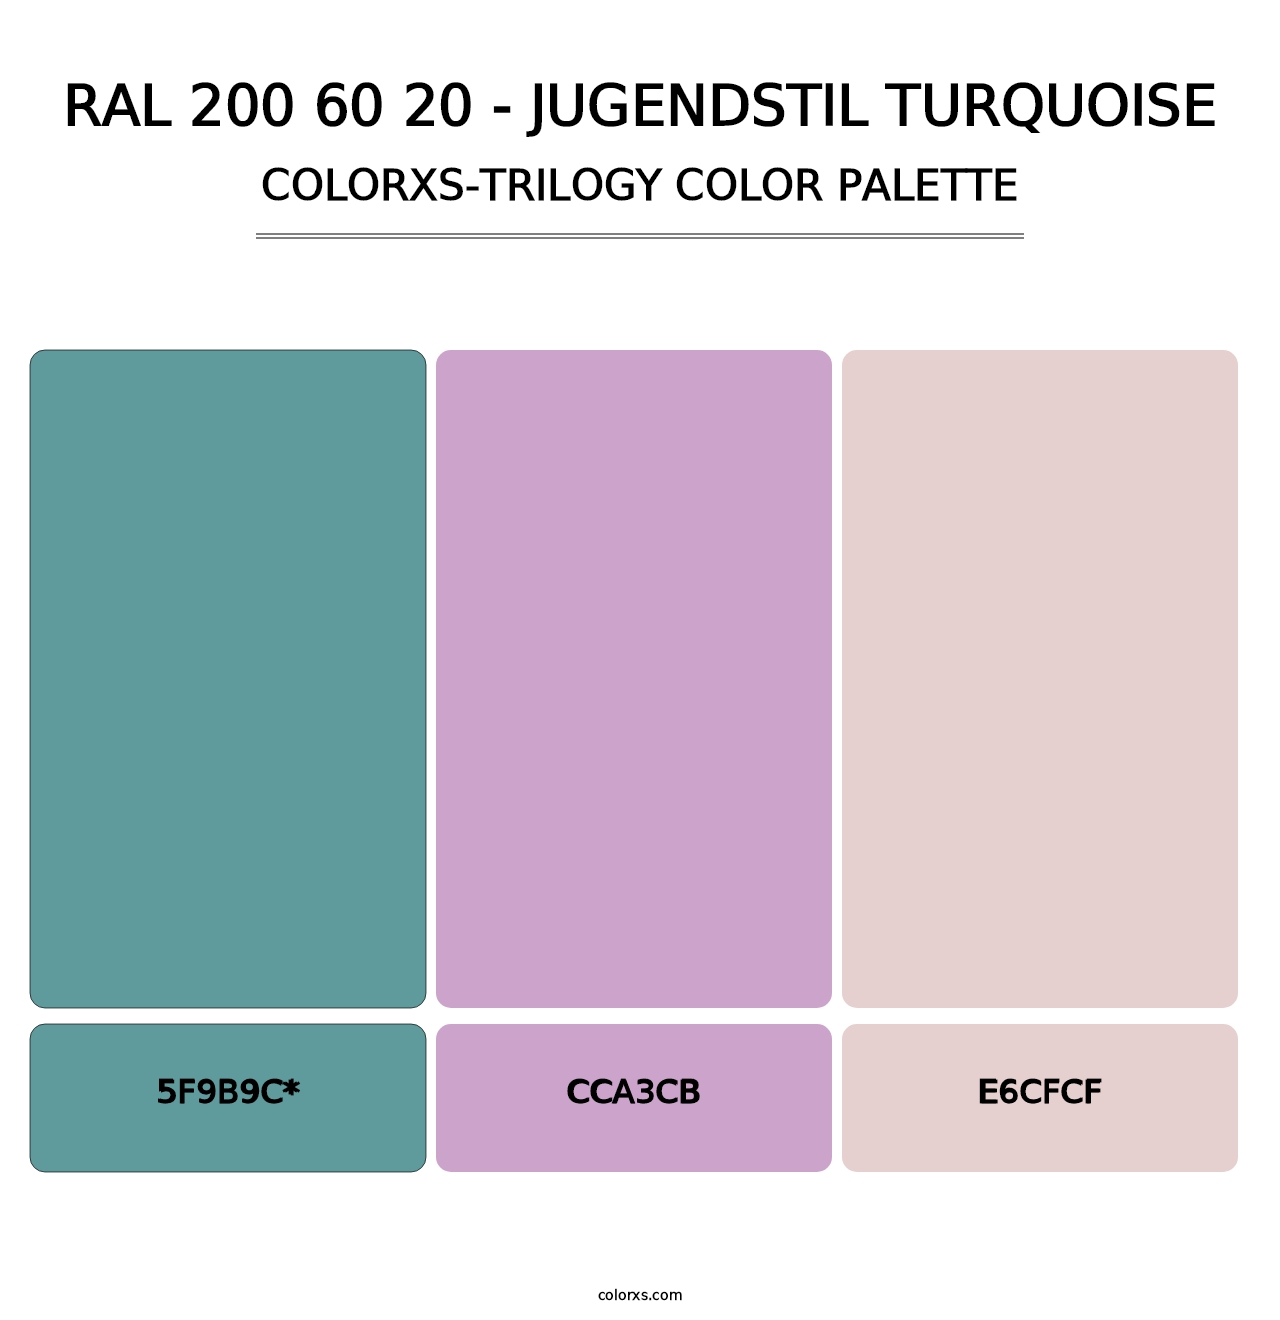 RAL 200 60 20 - Jugendstil Turquoise - Colorxs Trilogy Palette